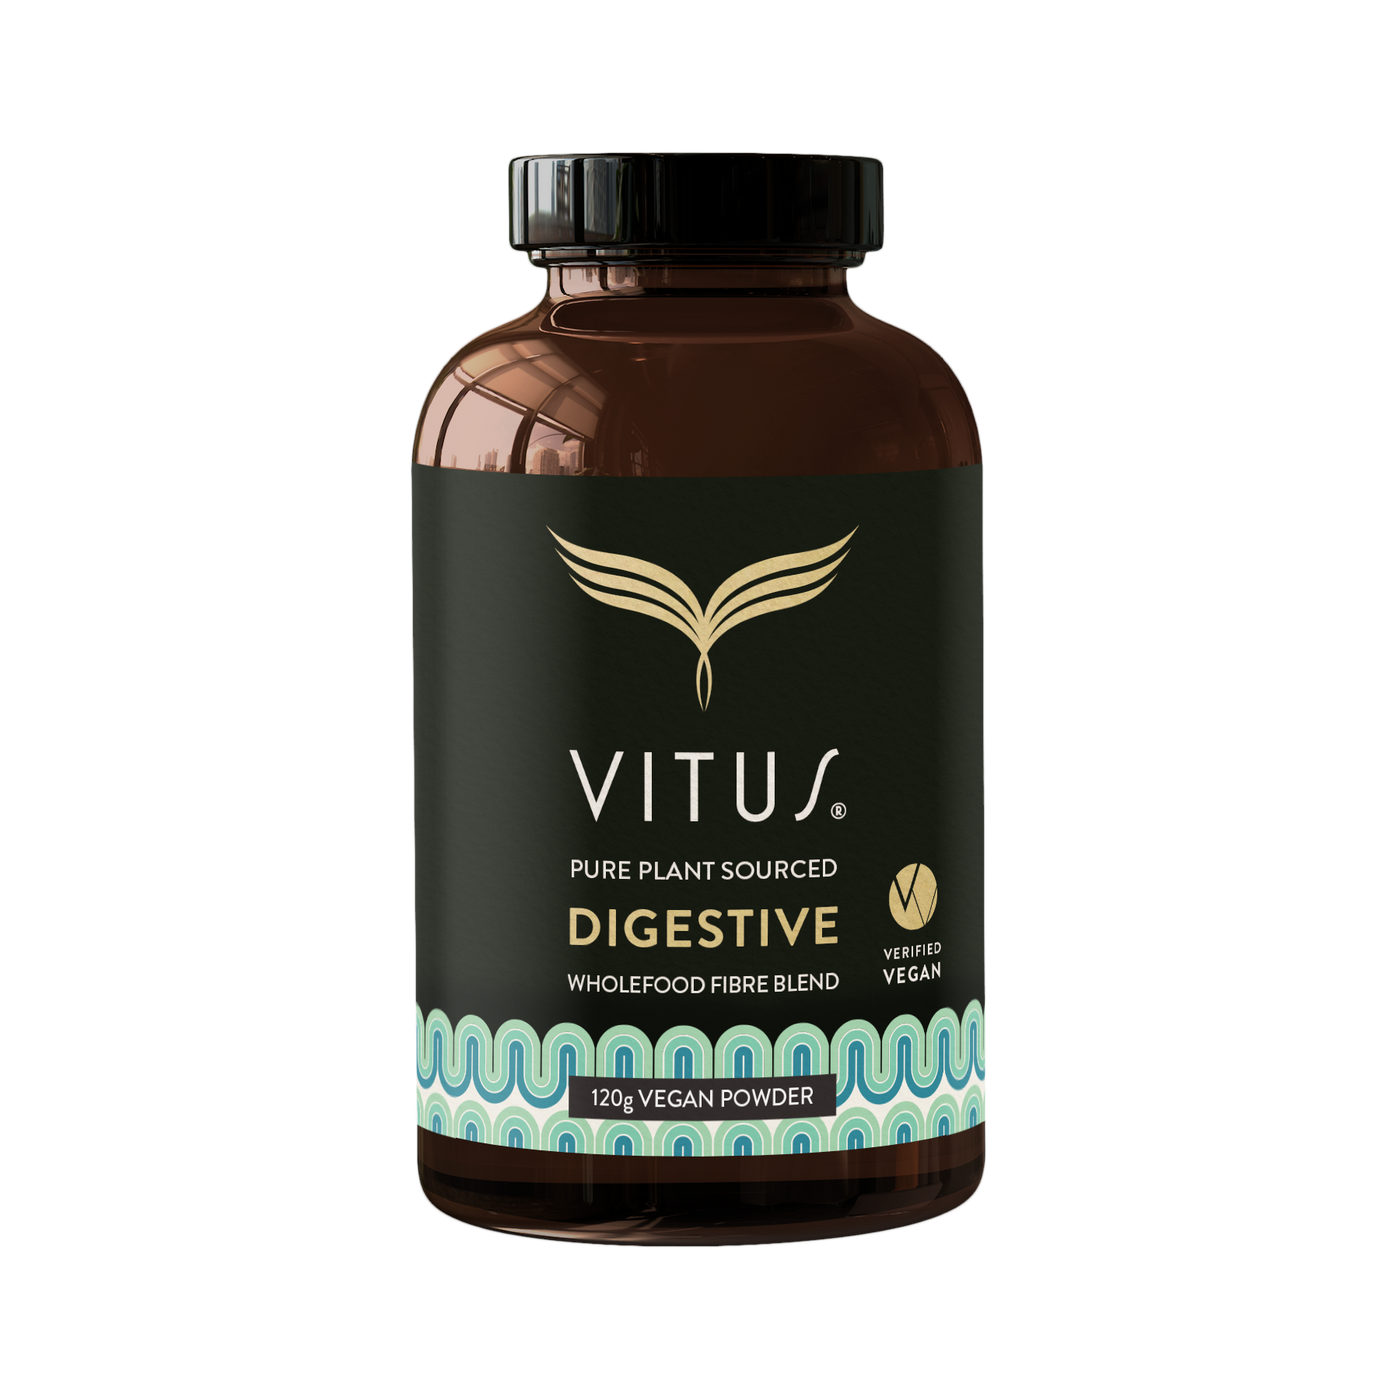 Vitus Digestive Powder 120g